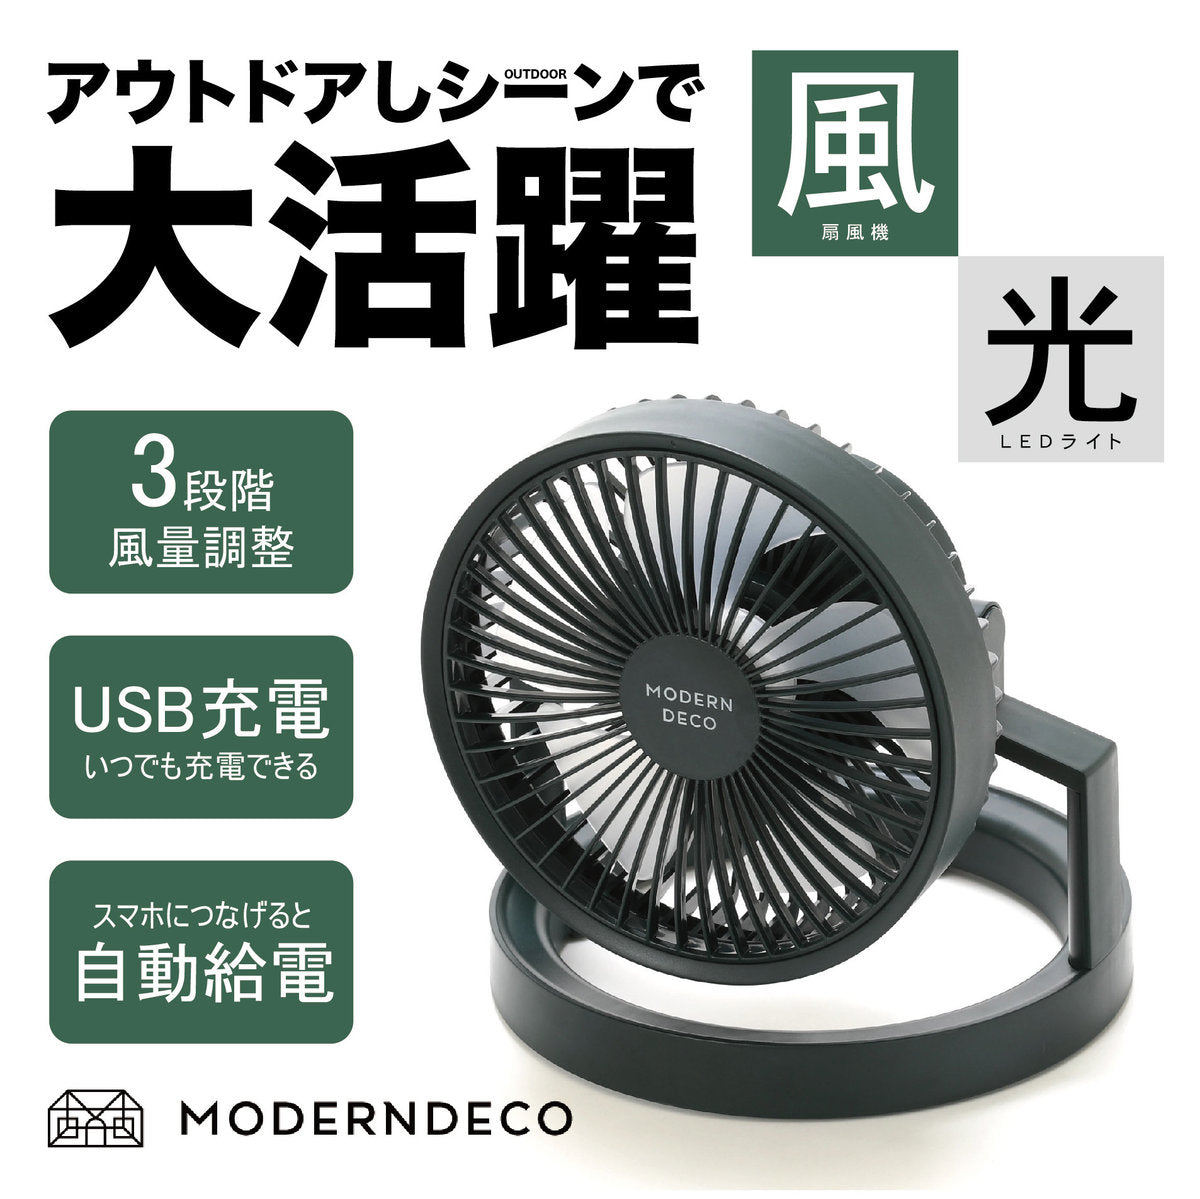 MODERN DECO - Multifunctional LED halo wireless fan MOD10